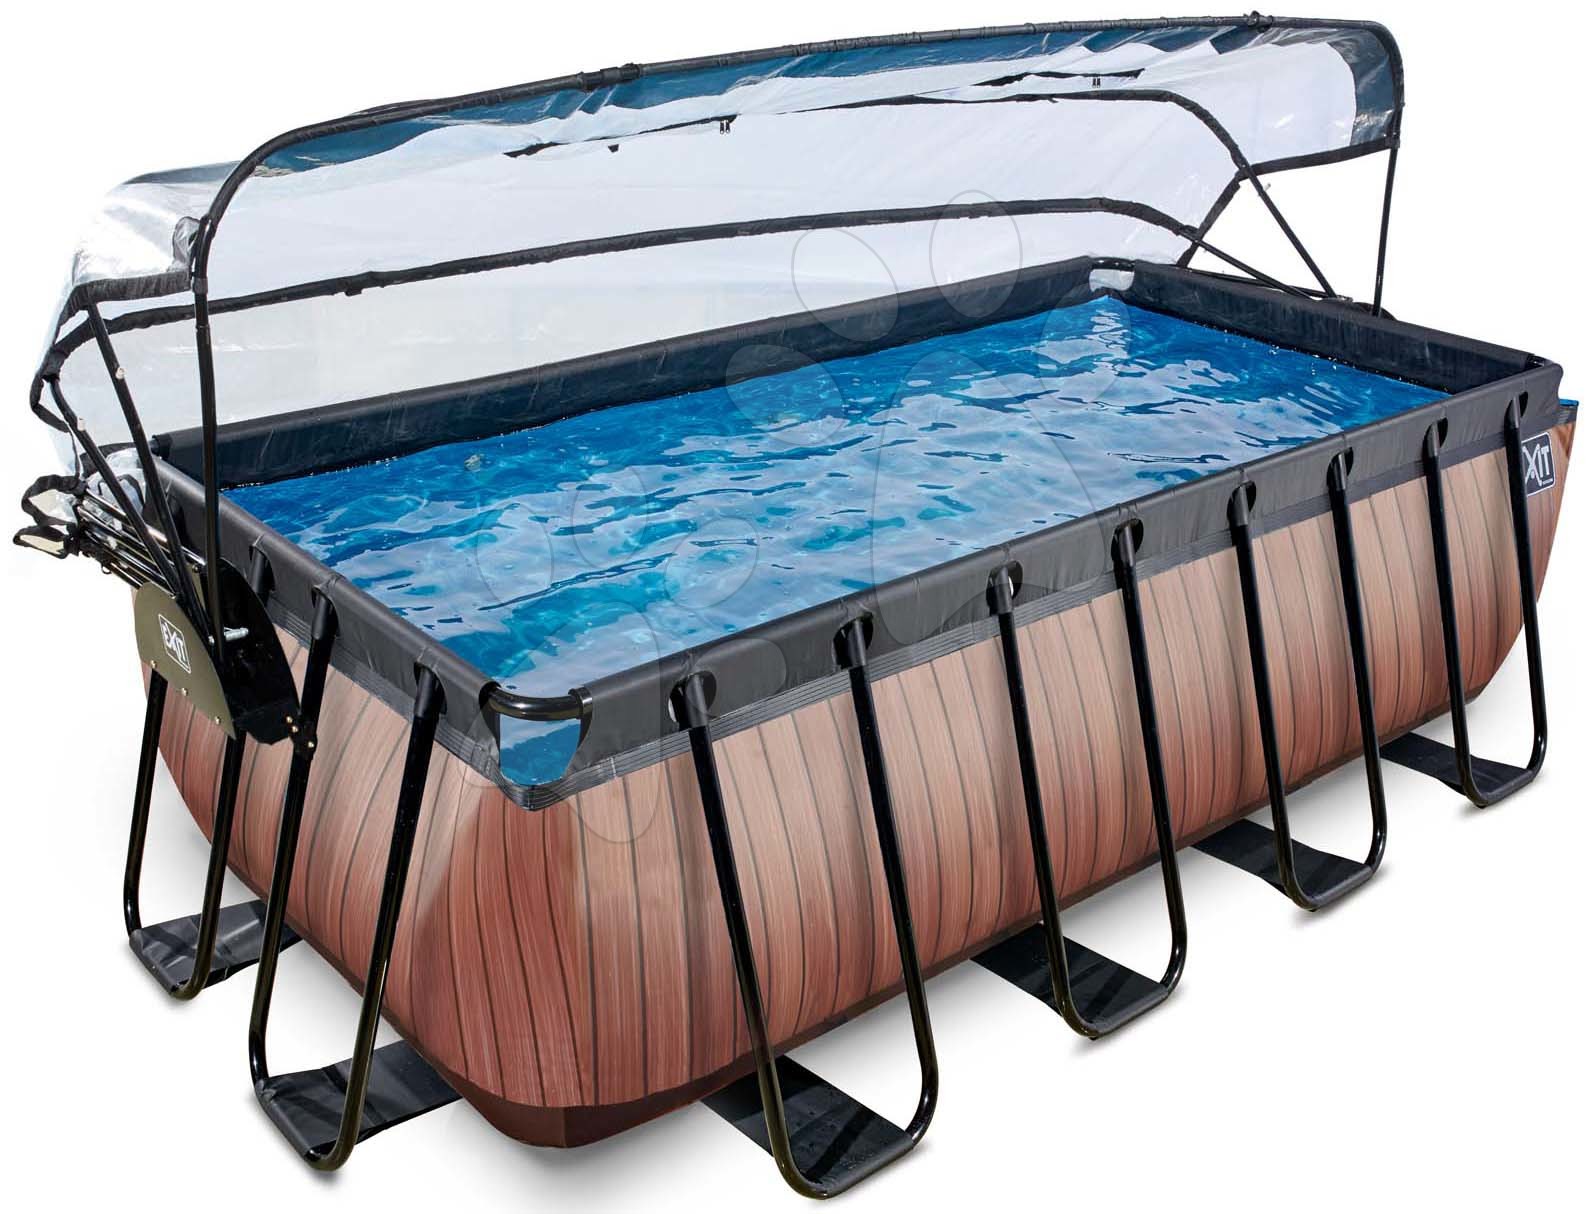 Obdélníkové bazény  - Bazén s krytem a pískovou filtrací Wood pool Exit Toys ocelová konstrukce 400*200*122 cm hnědý od 6 let